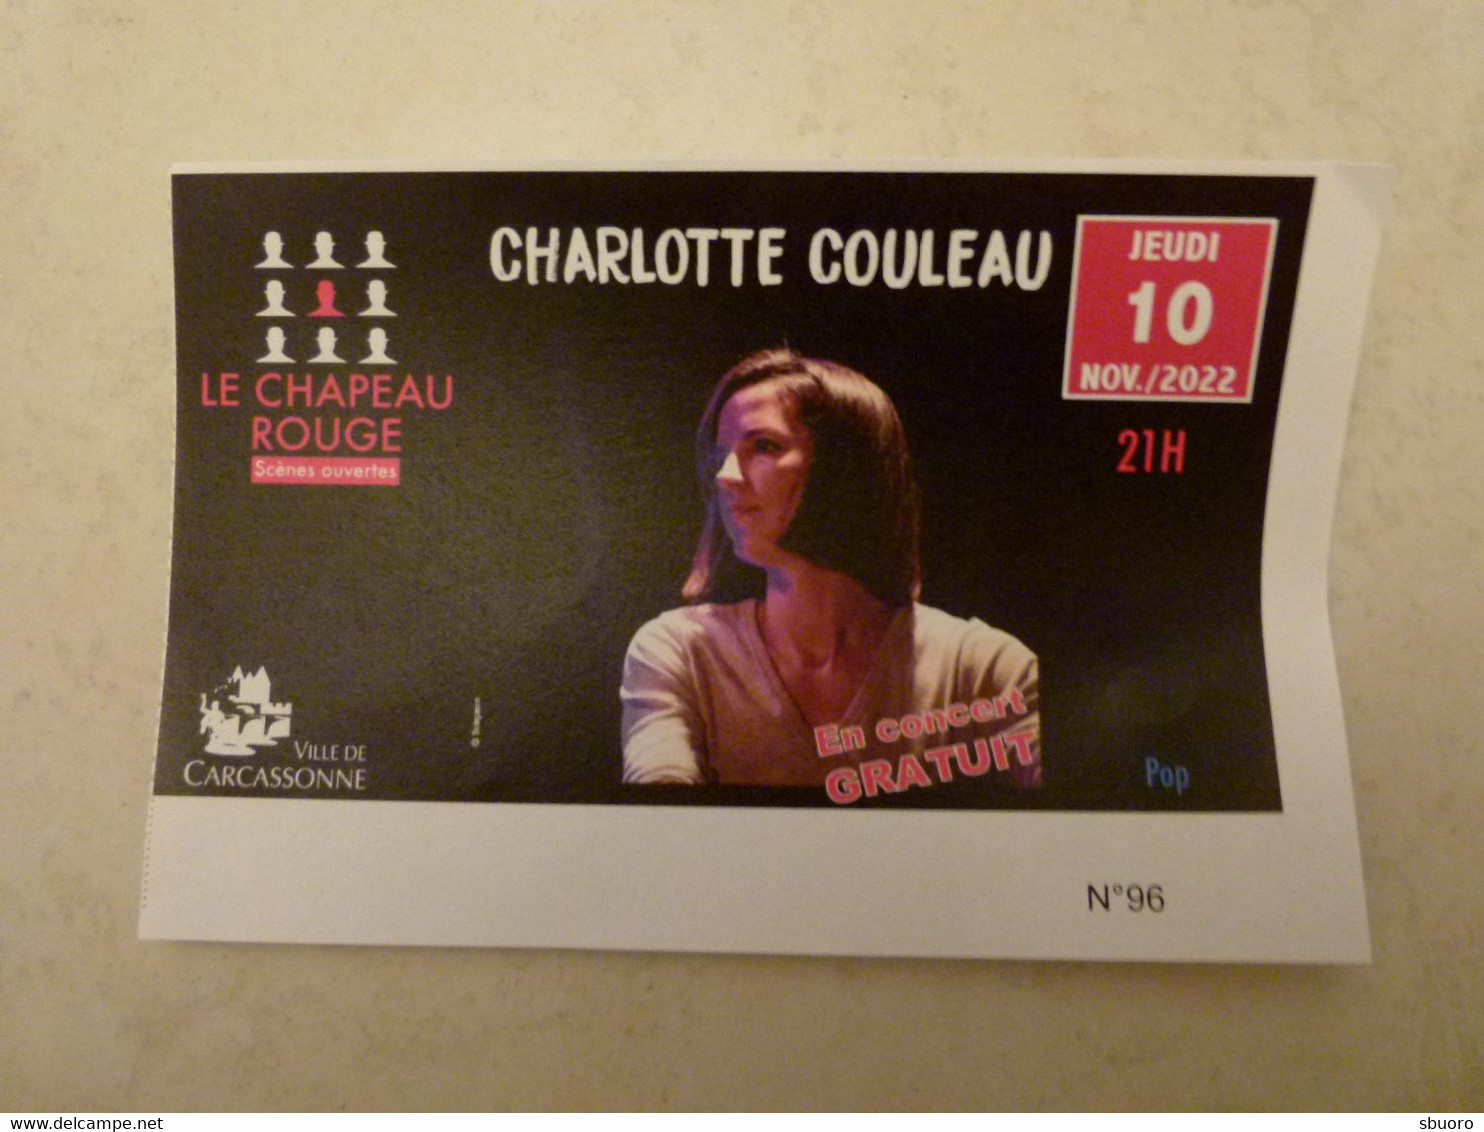 Charlotte Couleau, Chant Et Piano - 10 Novembre 2022 - Carcassonne (Aude) - Le Chapeau Rouge, Scènes Ouvertes. Daran - Concerttickets